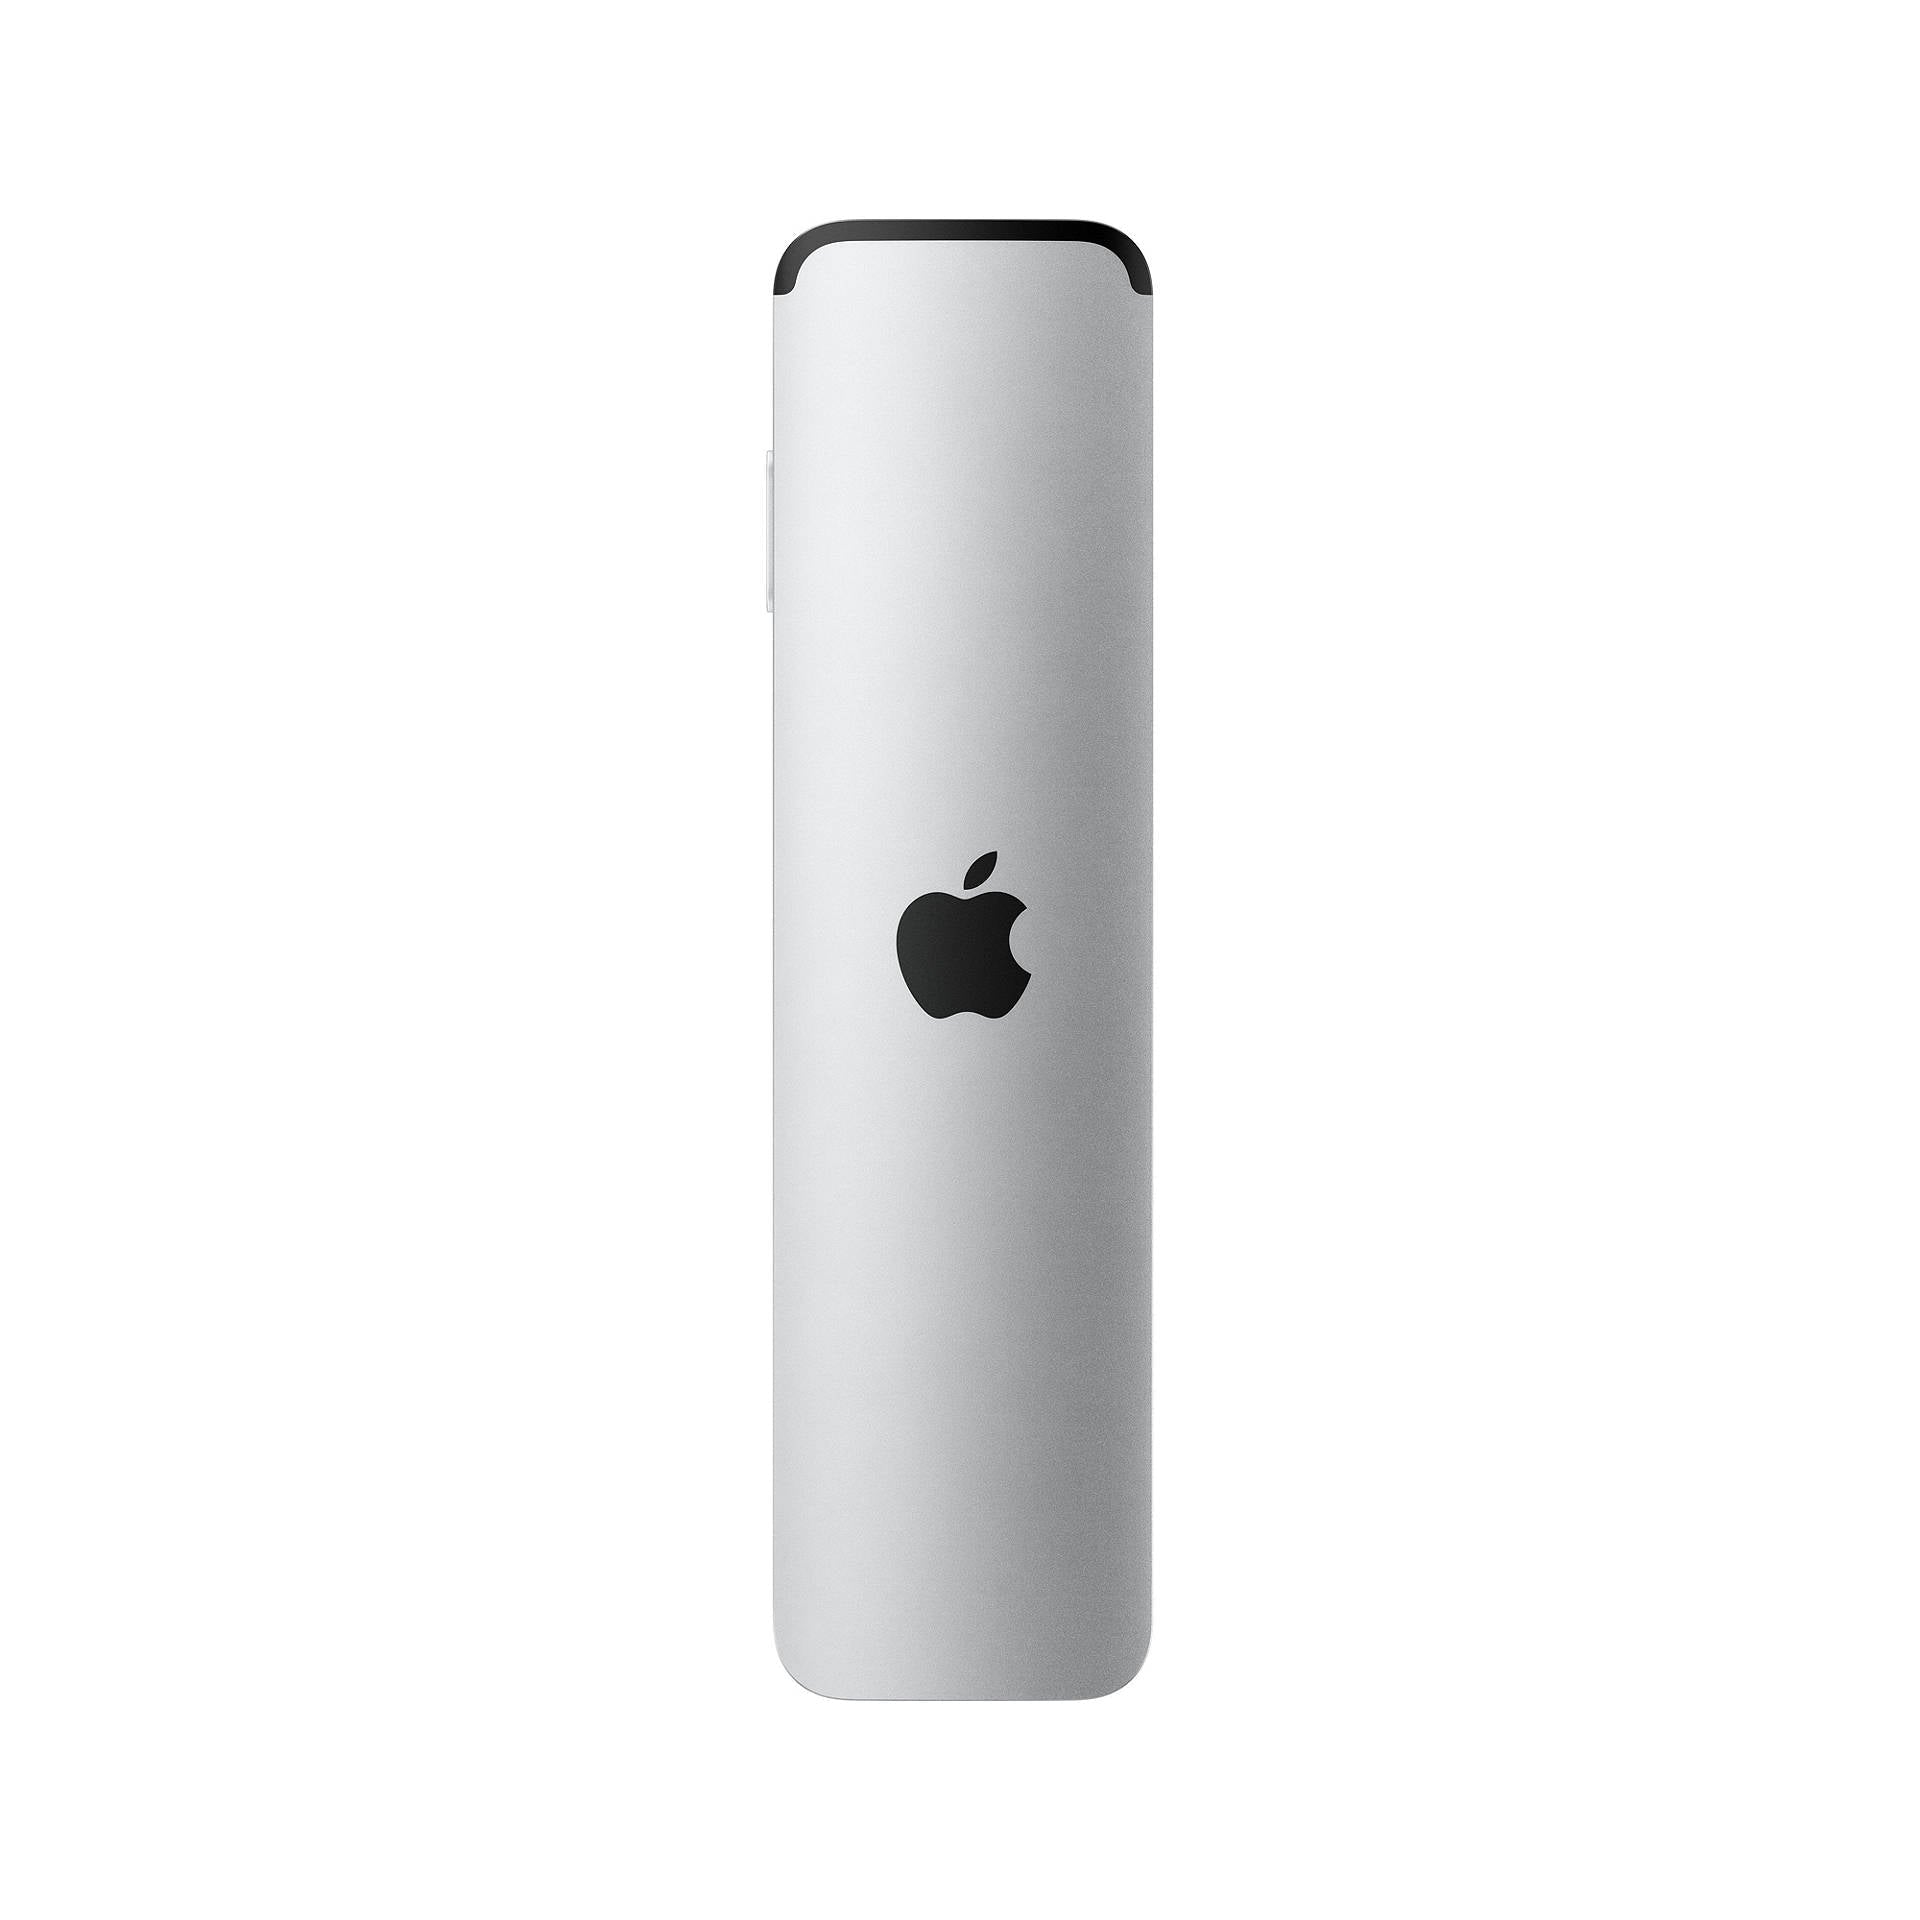 Apple Siri Remote - Silver - New